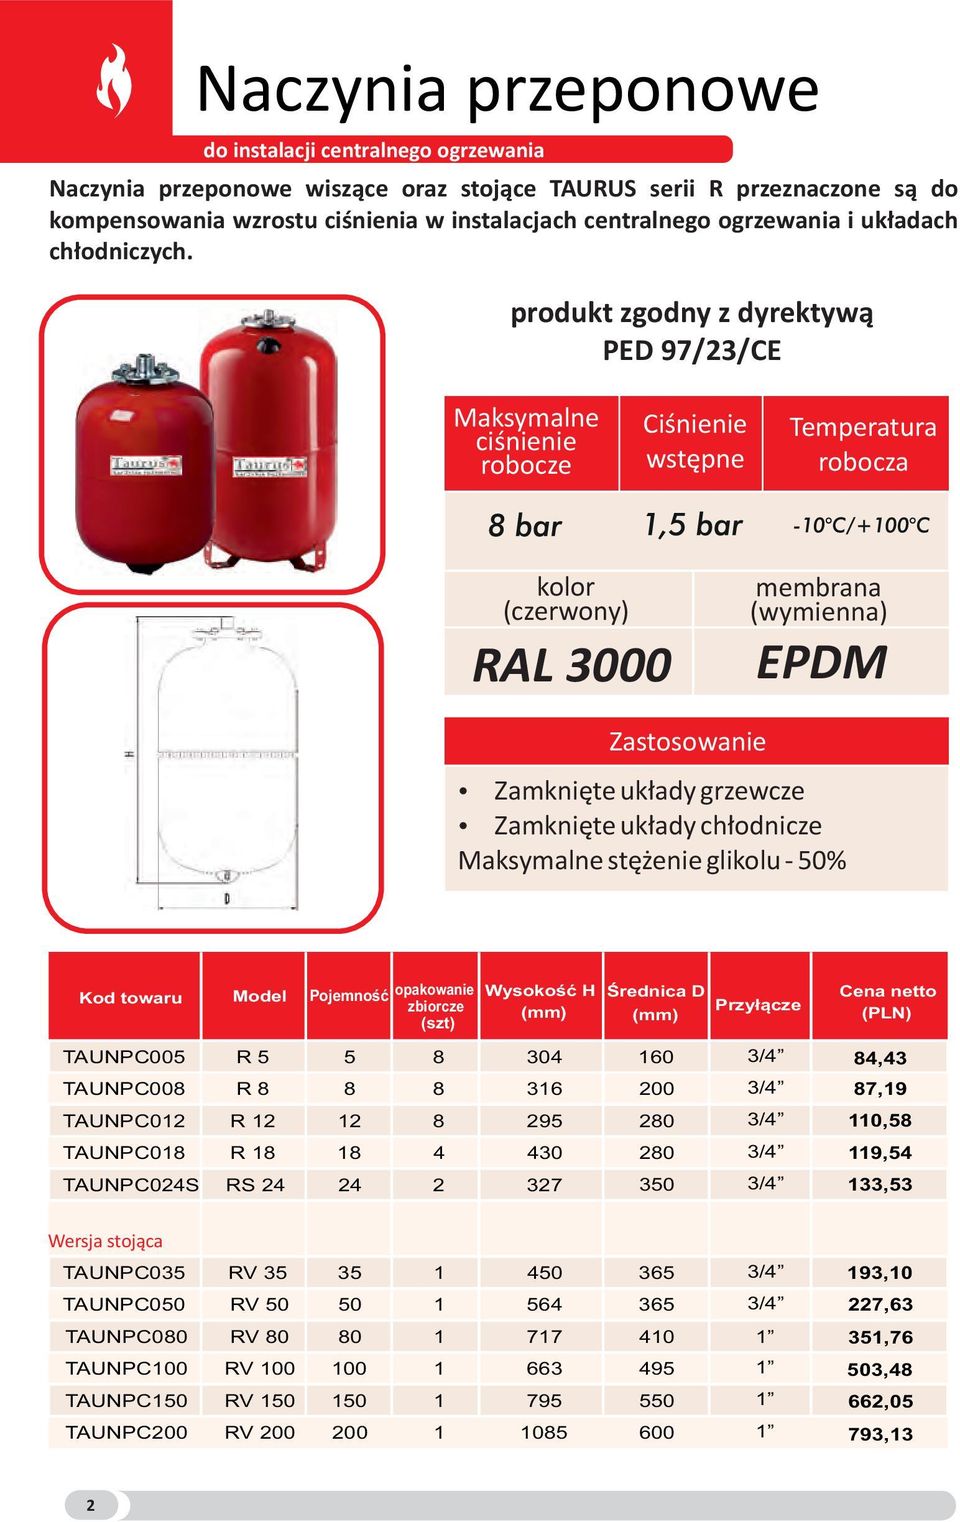 produkt zgodny z dyrektywą PED 97/23/CE Maksymalne ciśnienie robocze Ciśnienie wstępne Temperatura robocza kolor (czerwony) RAL 3000 membrana (wymienna) EPDM Zastosowanie ź Zamknięte układy grzewcze